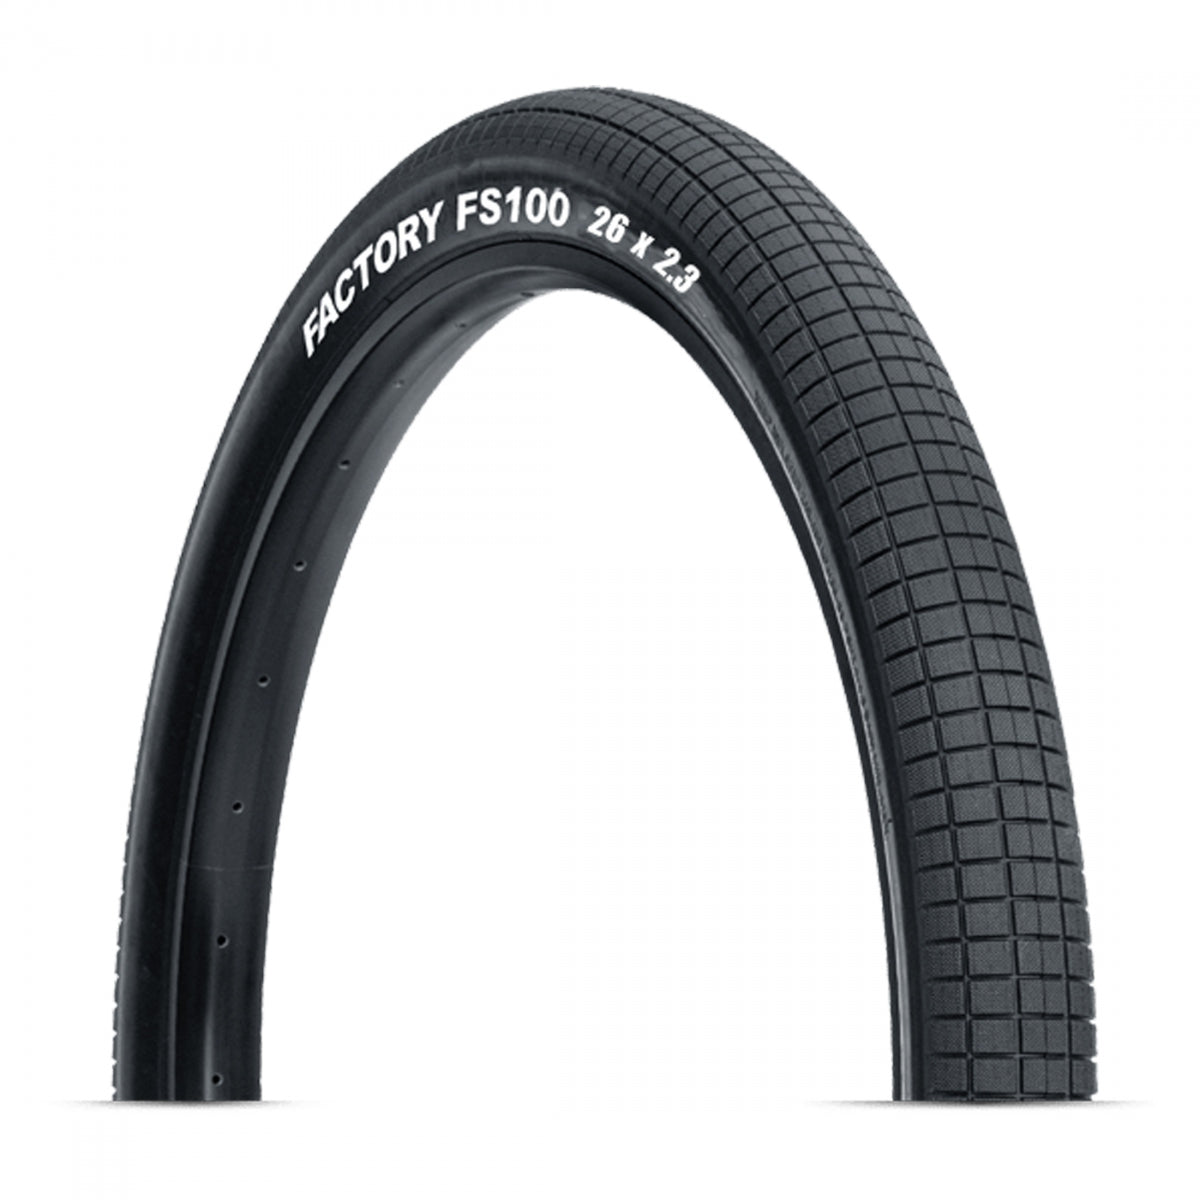 Tire Tioga Fs100 26X2.3 Wire/60 Black